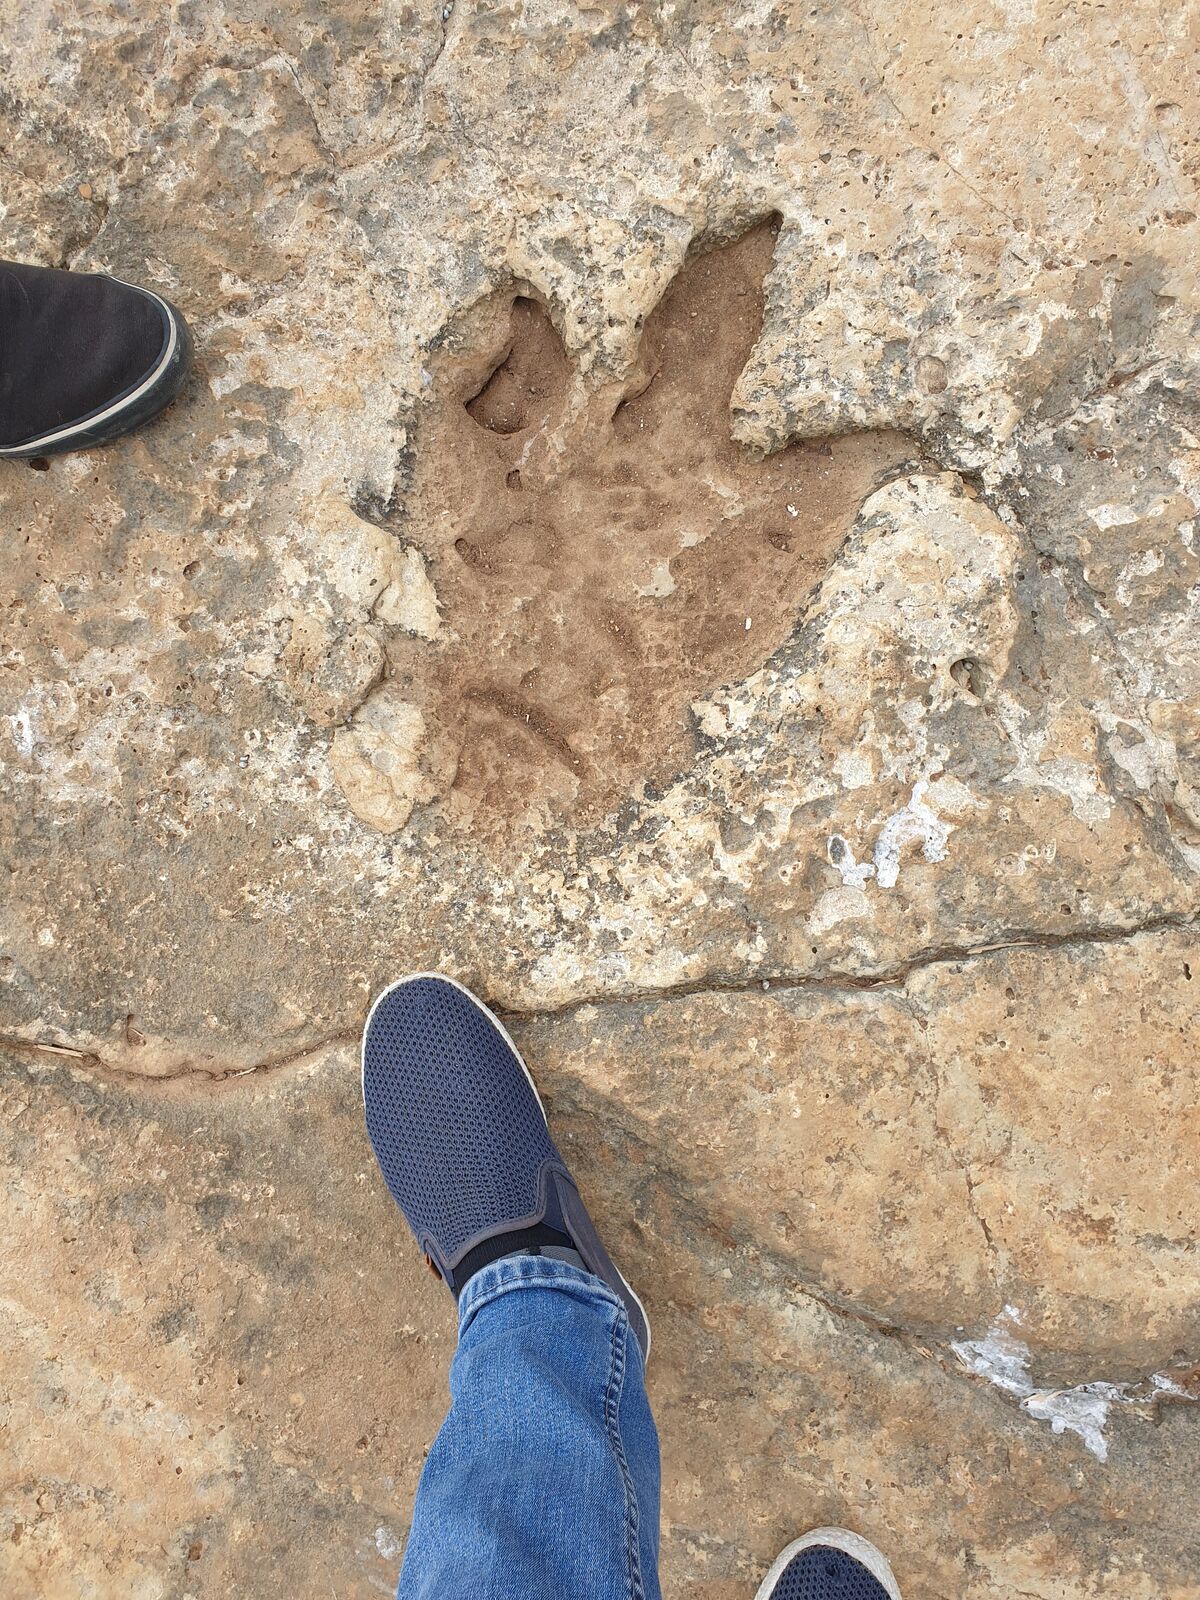 Fossilised dinosaur footprint on the main island of the Brijuni archipelago